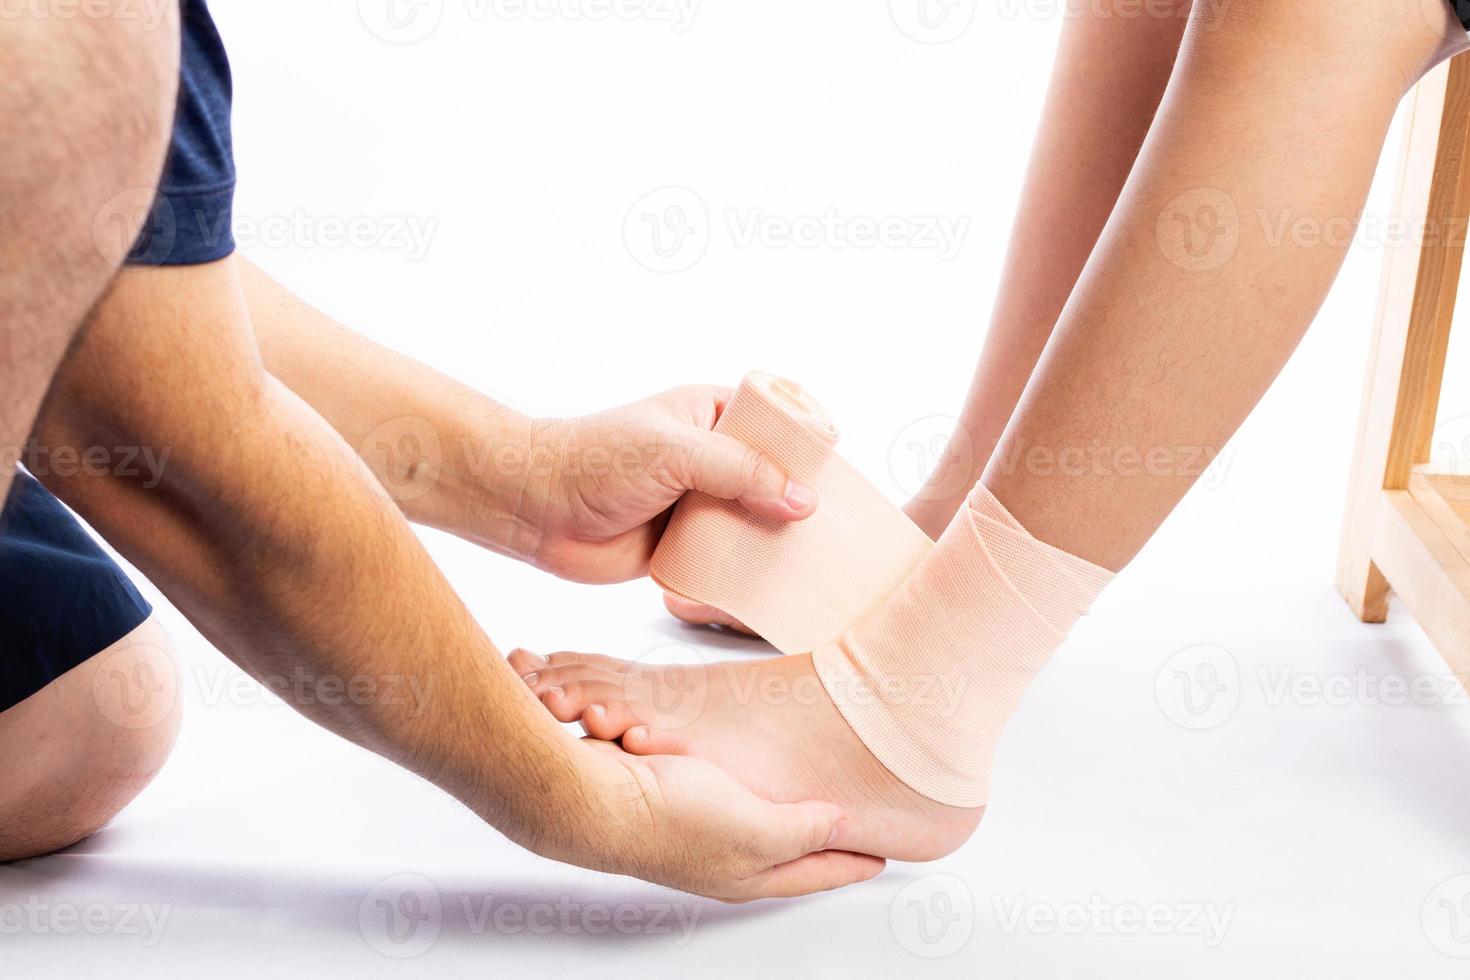 homens ou mulheres idosos ou jovens têm problemas nos joelhos, tornozelos, articulações, artrite e tendões. dor muscular induzida pelo exercício da gota e ácido úrico isolado no fundo branco foto